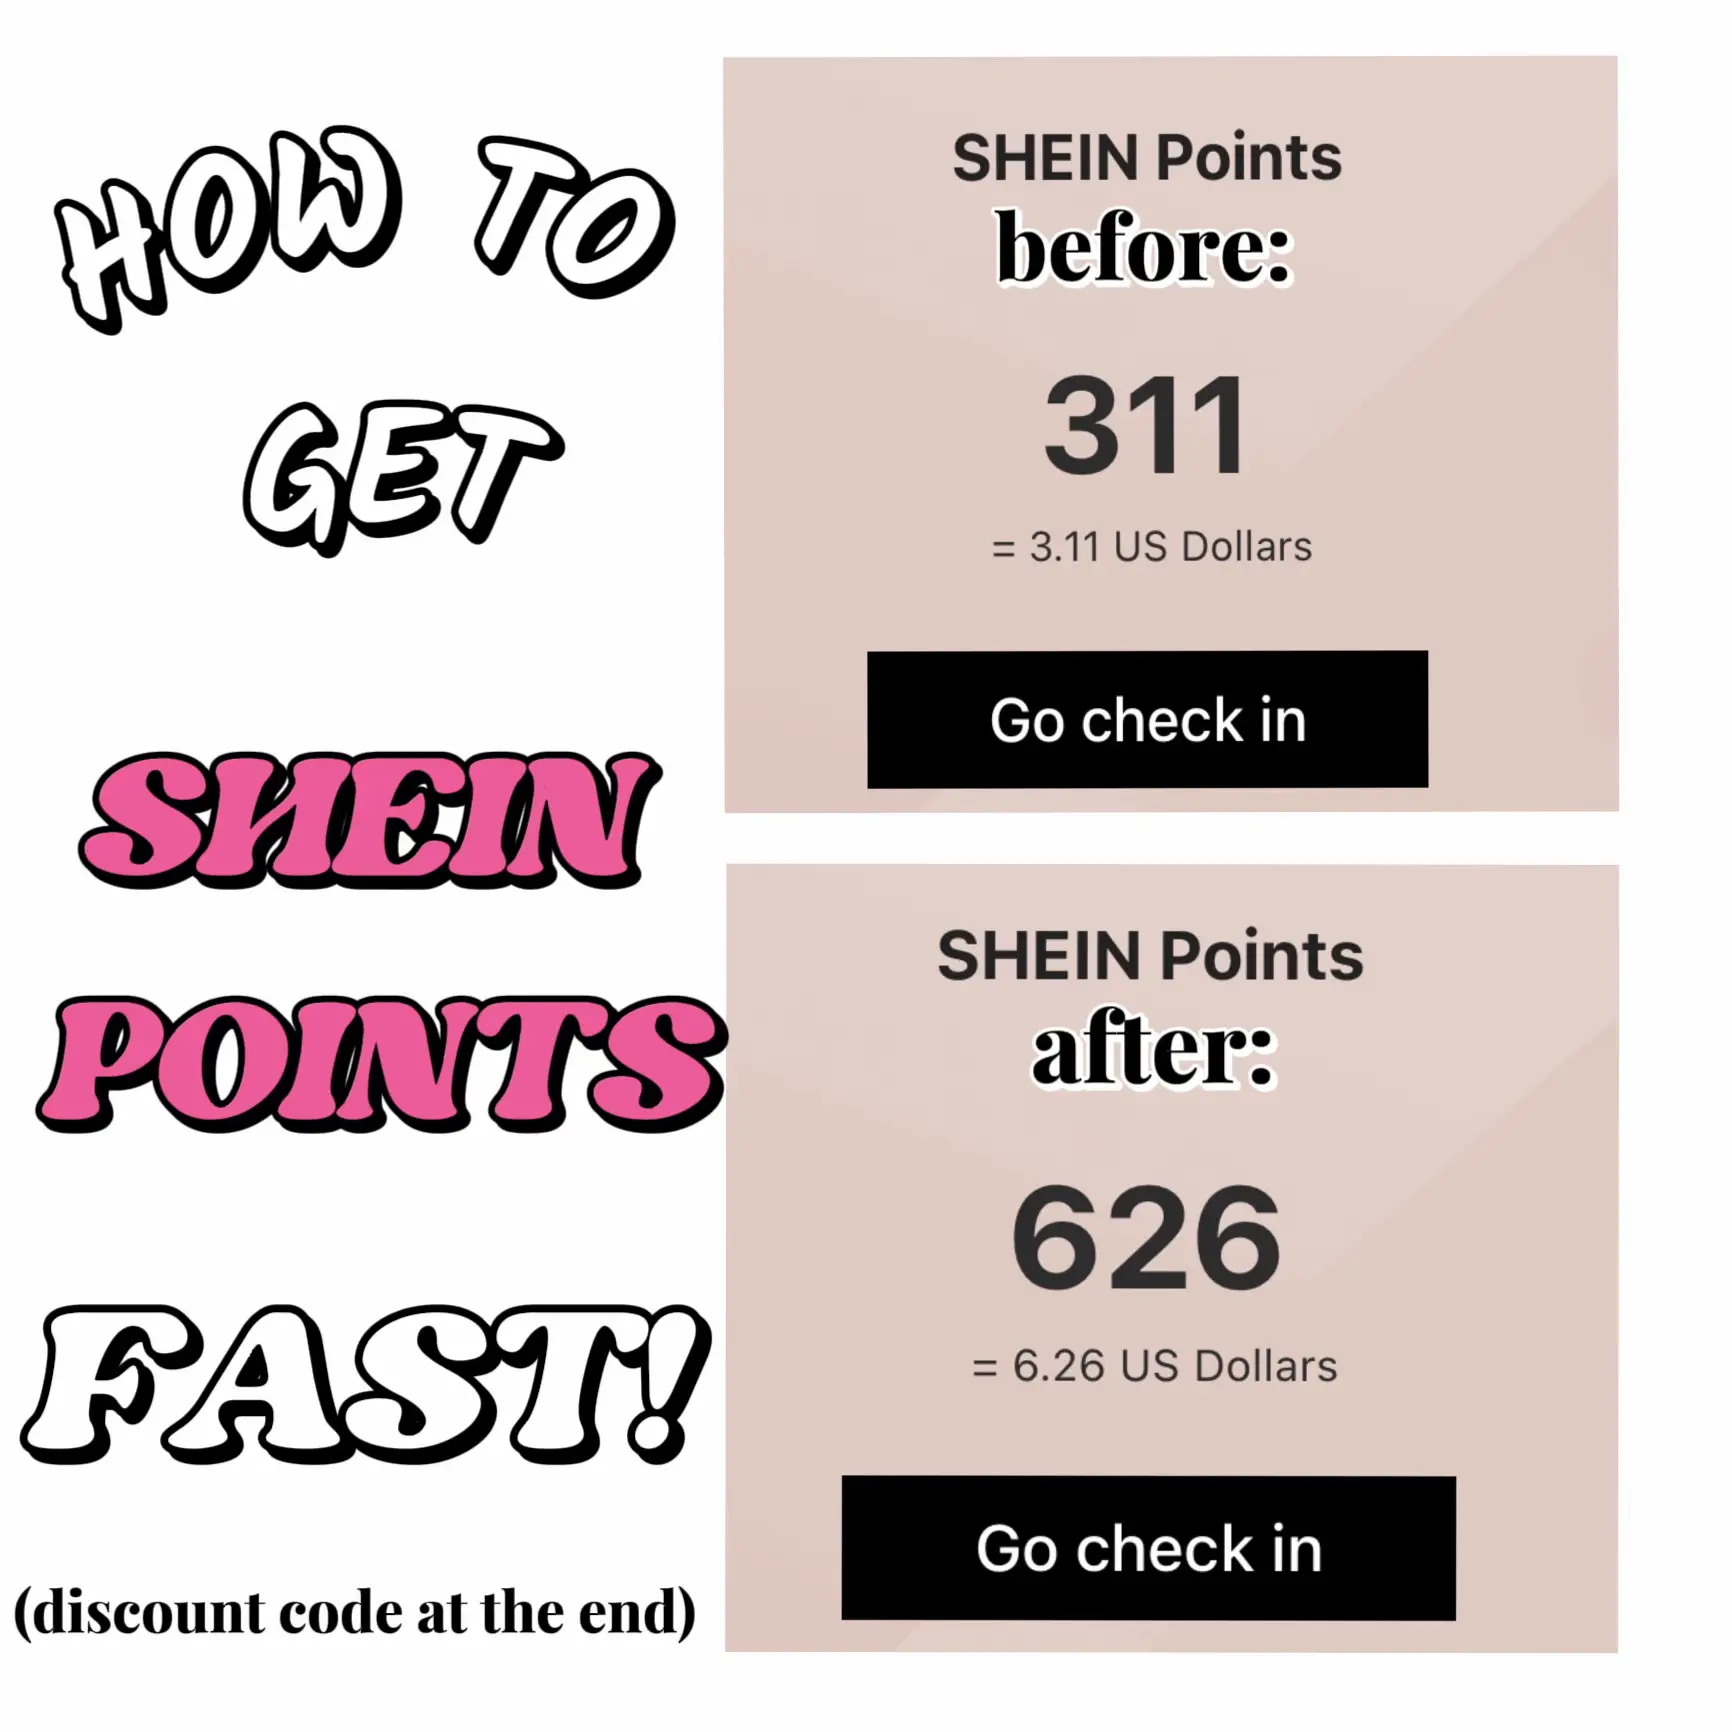 Shein Points - Lemon8 Search